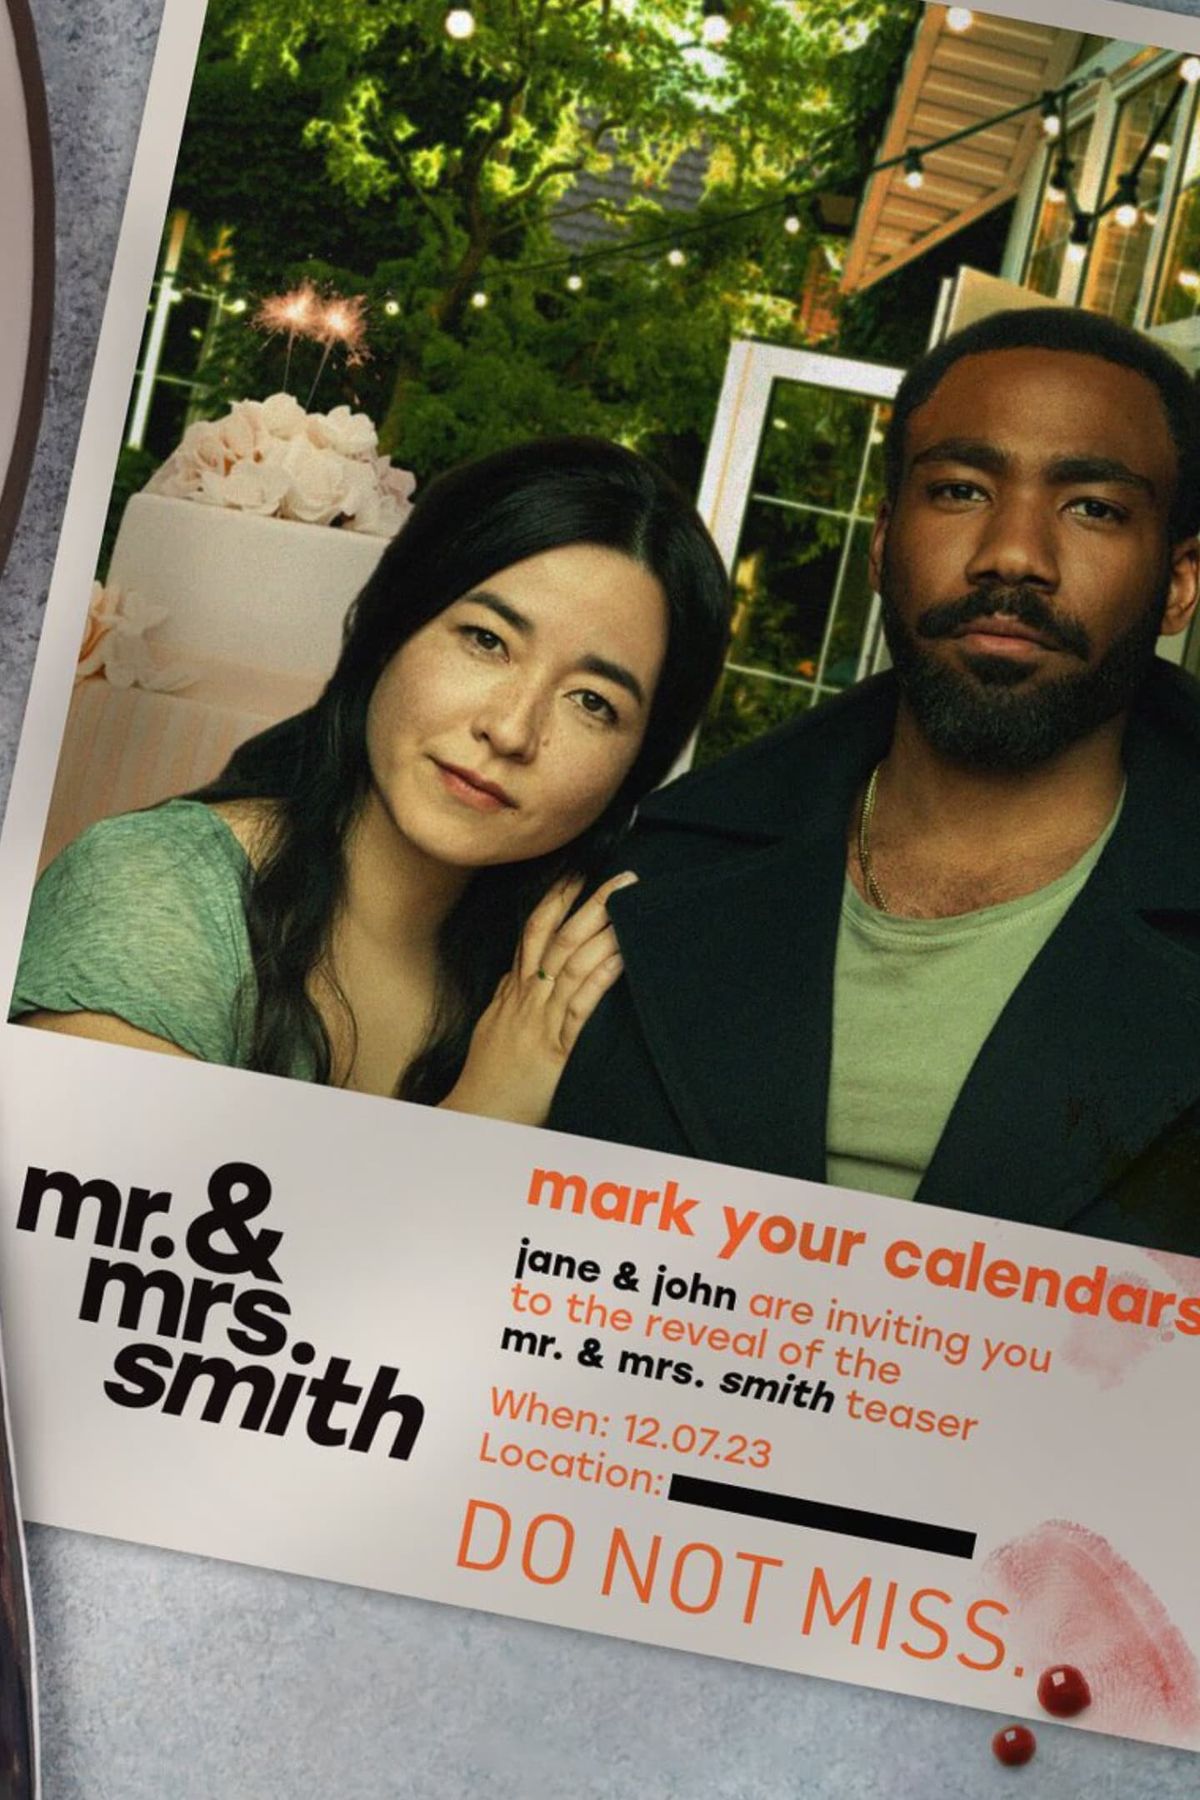 Mr. & Mrs. Smith (2024) SerienInformation und Trailer KinoCheck